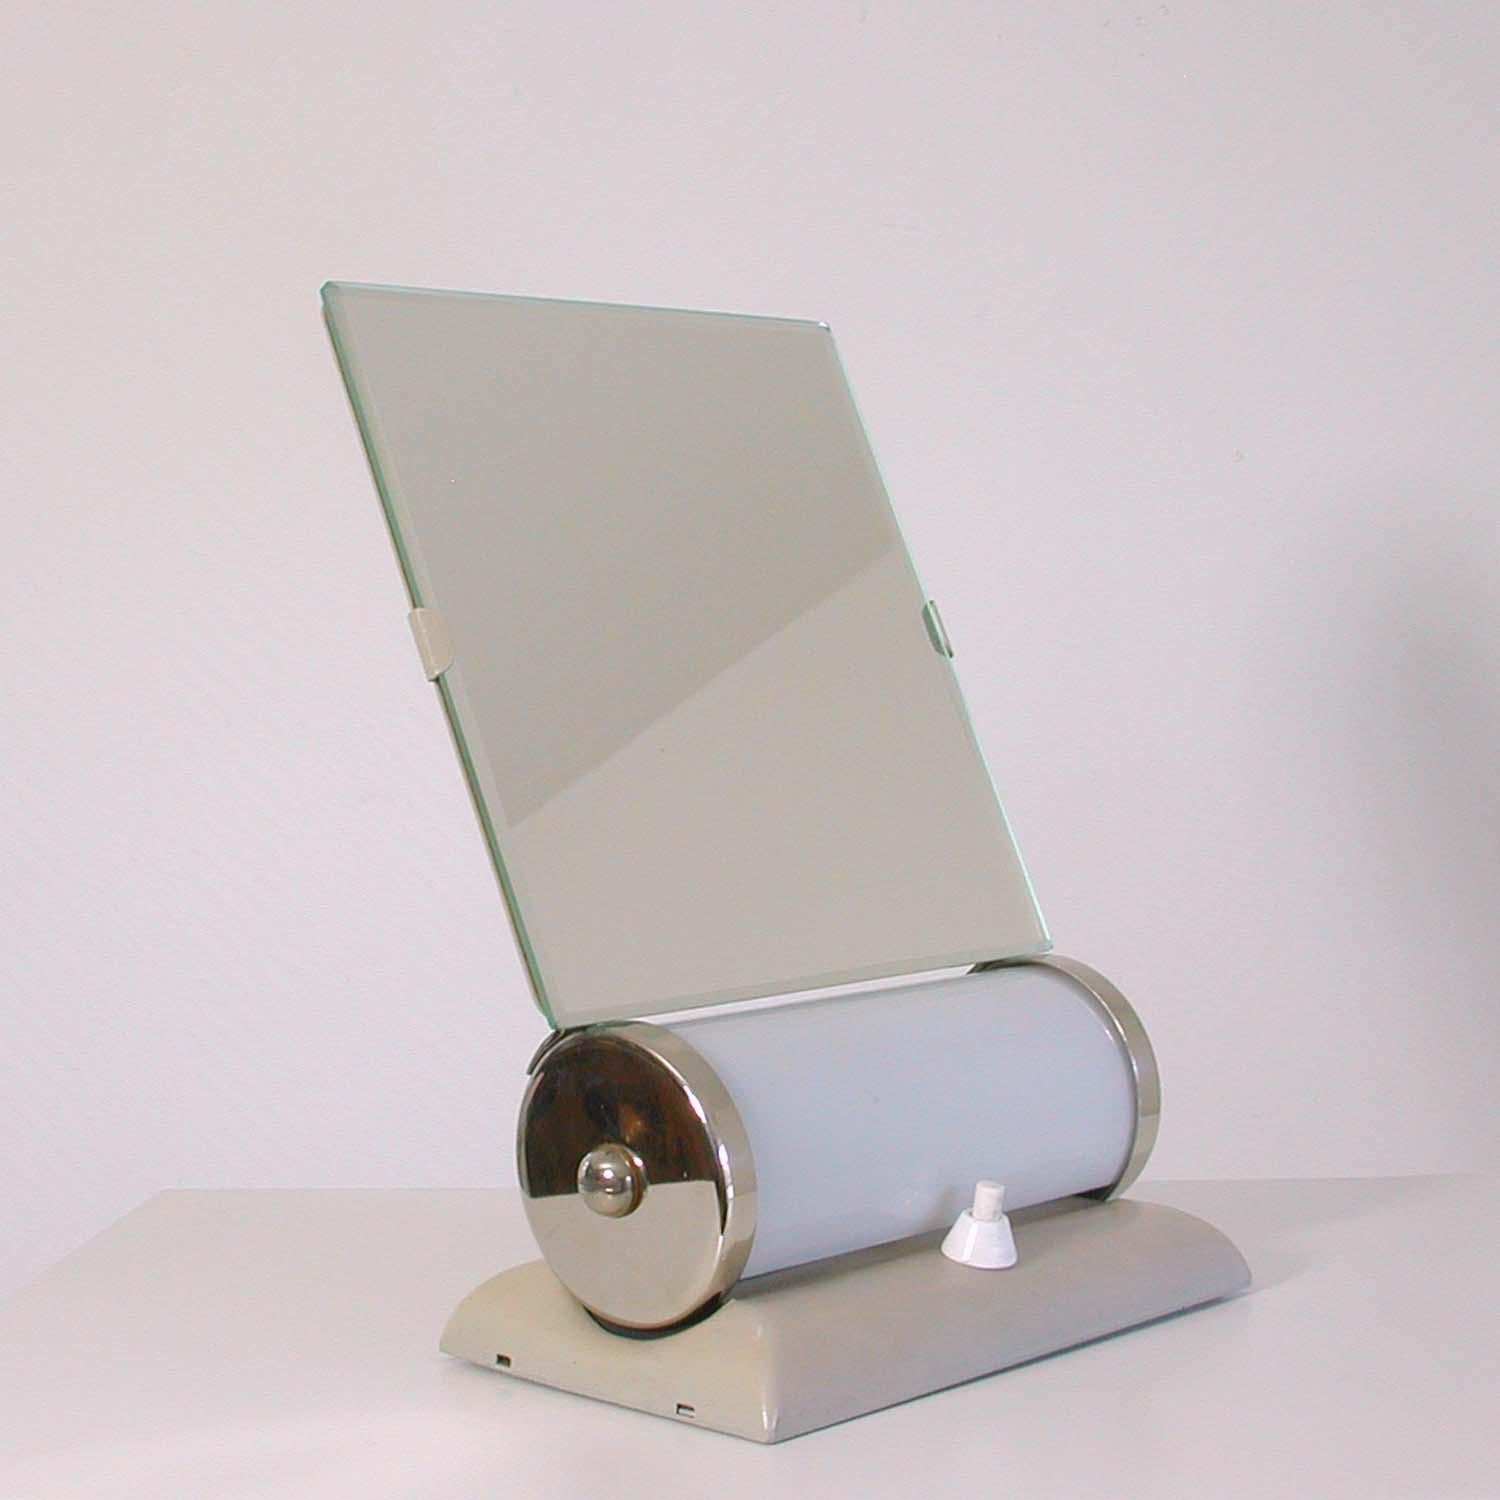 Ce miroir de table d'inspiration Bauhaus a été conçu et fabriqué en Allemagne dans les années 1930-1940 à la manière de Ruppelwerke, Gotha.

Elle est dotée d'une base laquée crème, d'un miroir biseauté réglable et d'un abat-jour opalin. Toutes les